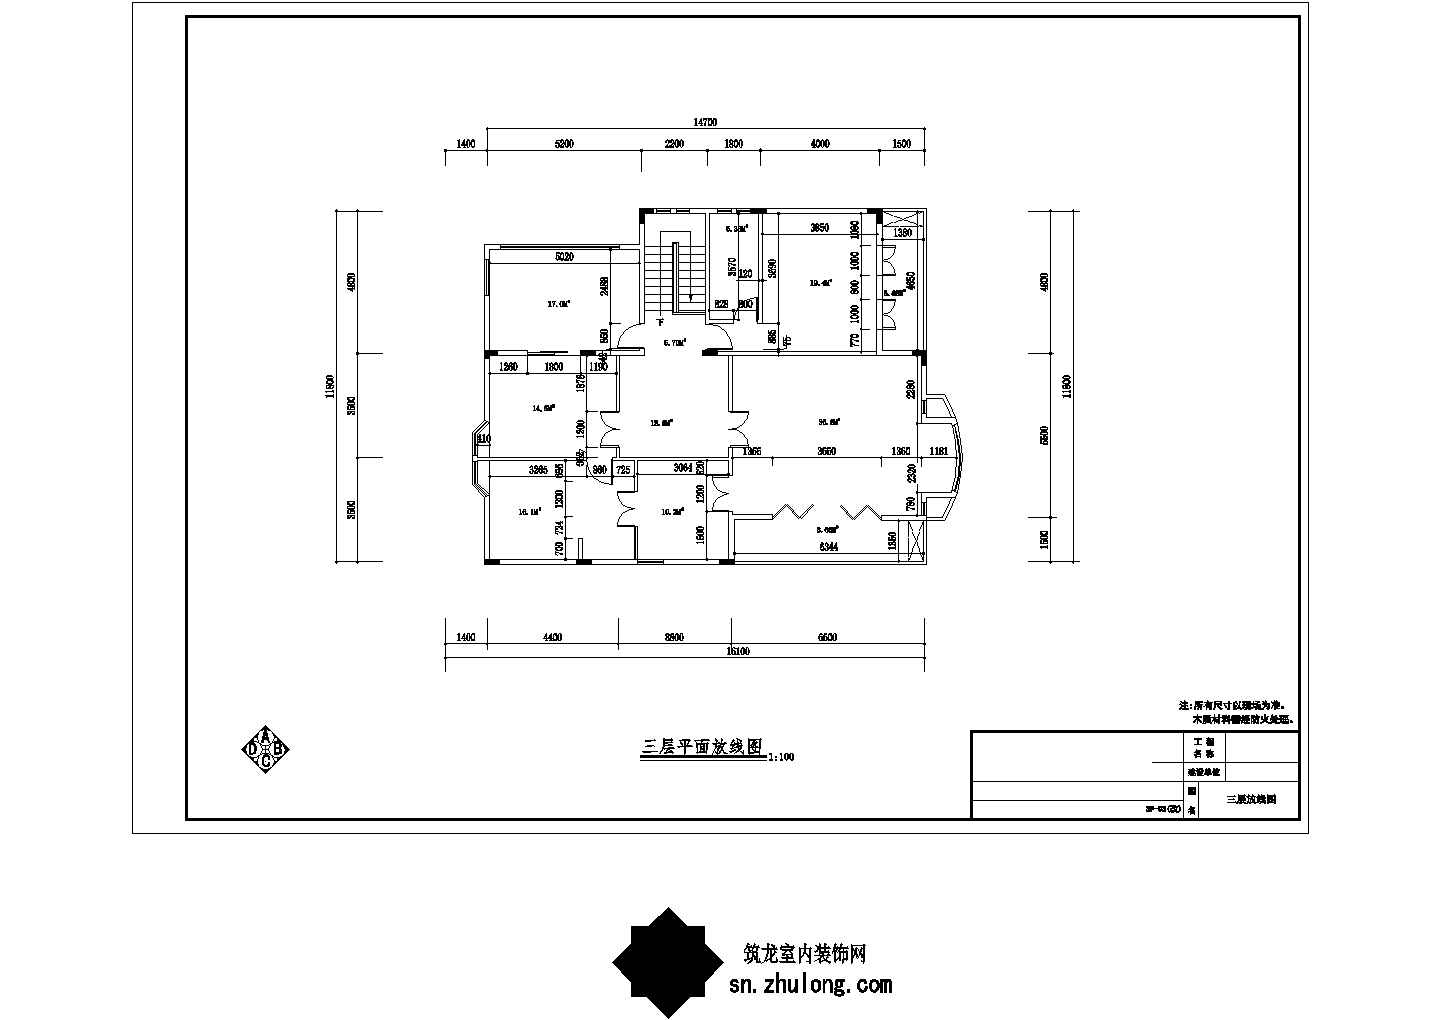 苏州风景秀丽生态园区A2型欧式风情三层别墅装修施工图